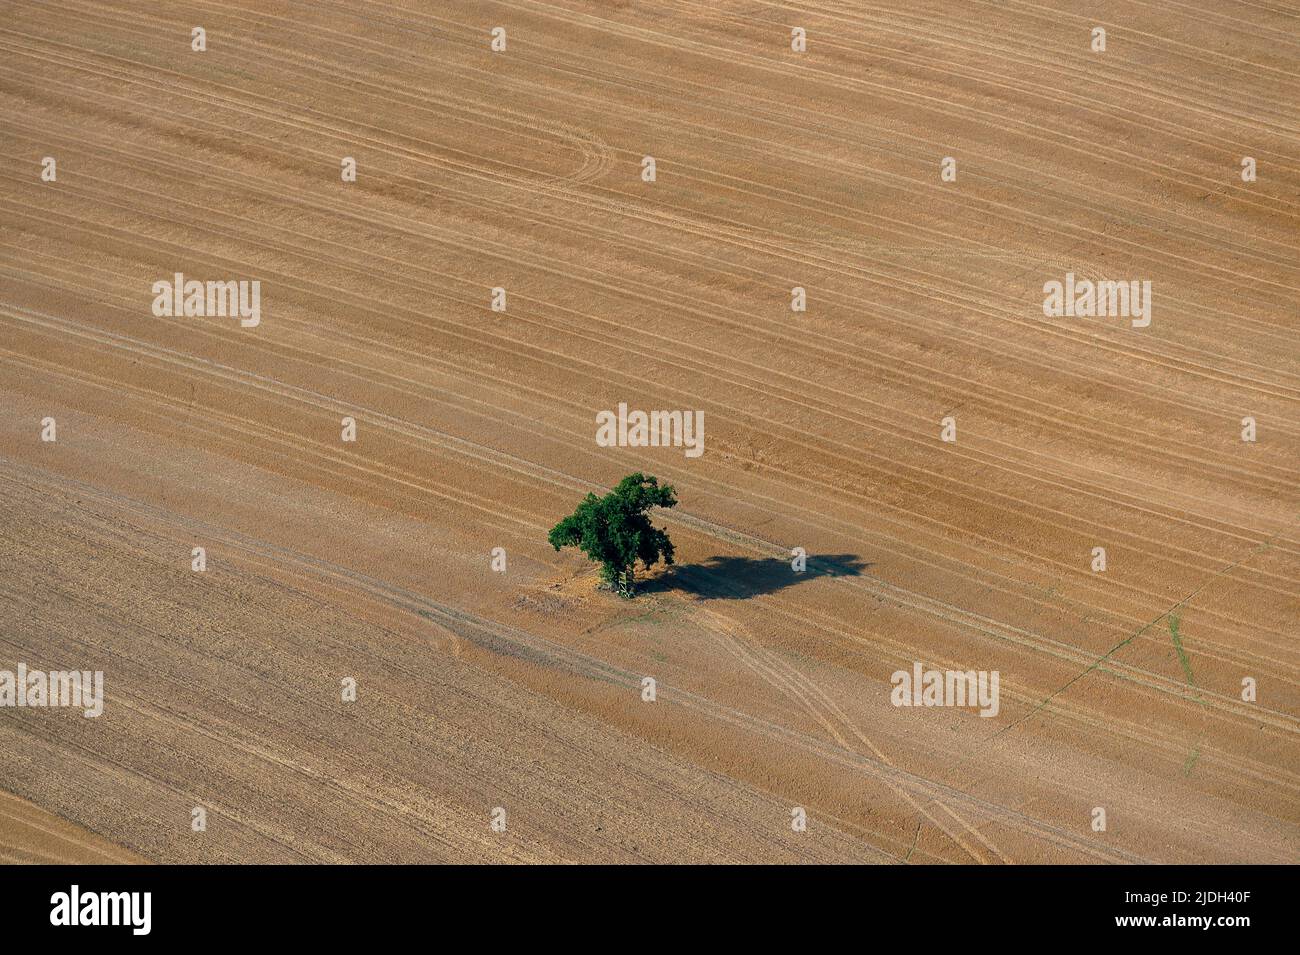 Albero singolo su un campo raccolto con ombra, vista aerea 08/31/2019, Germania, Schleswig-Holstein Foto Stock